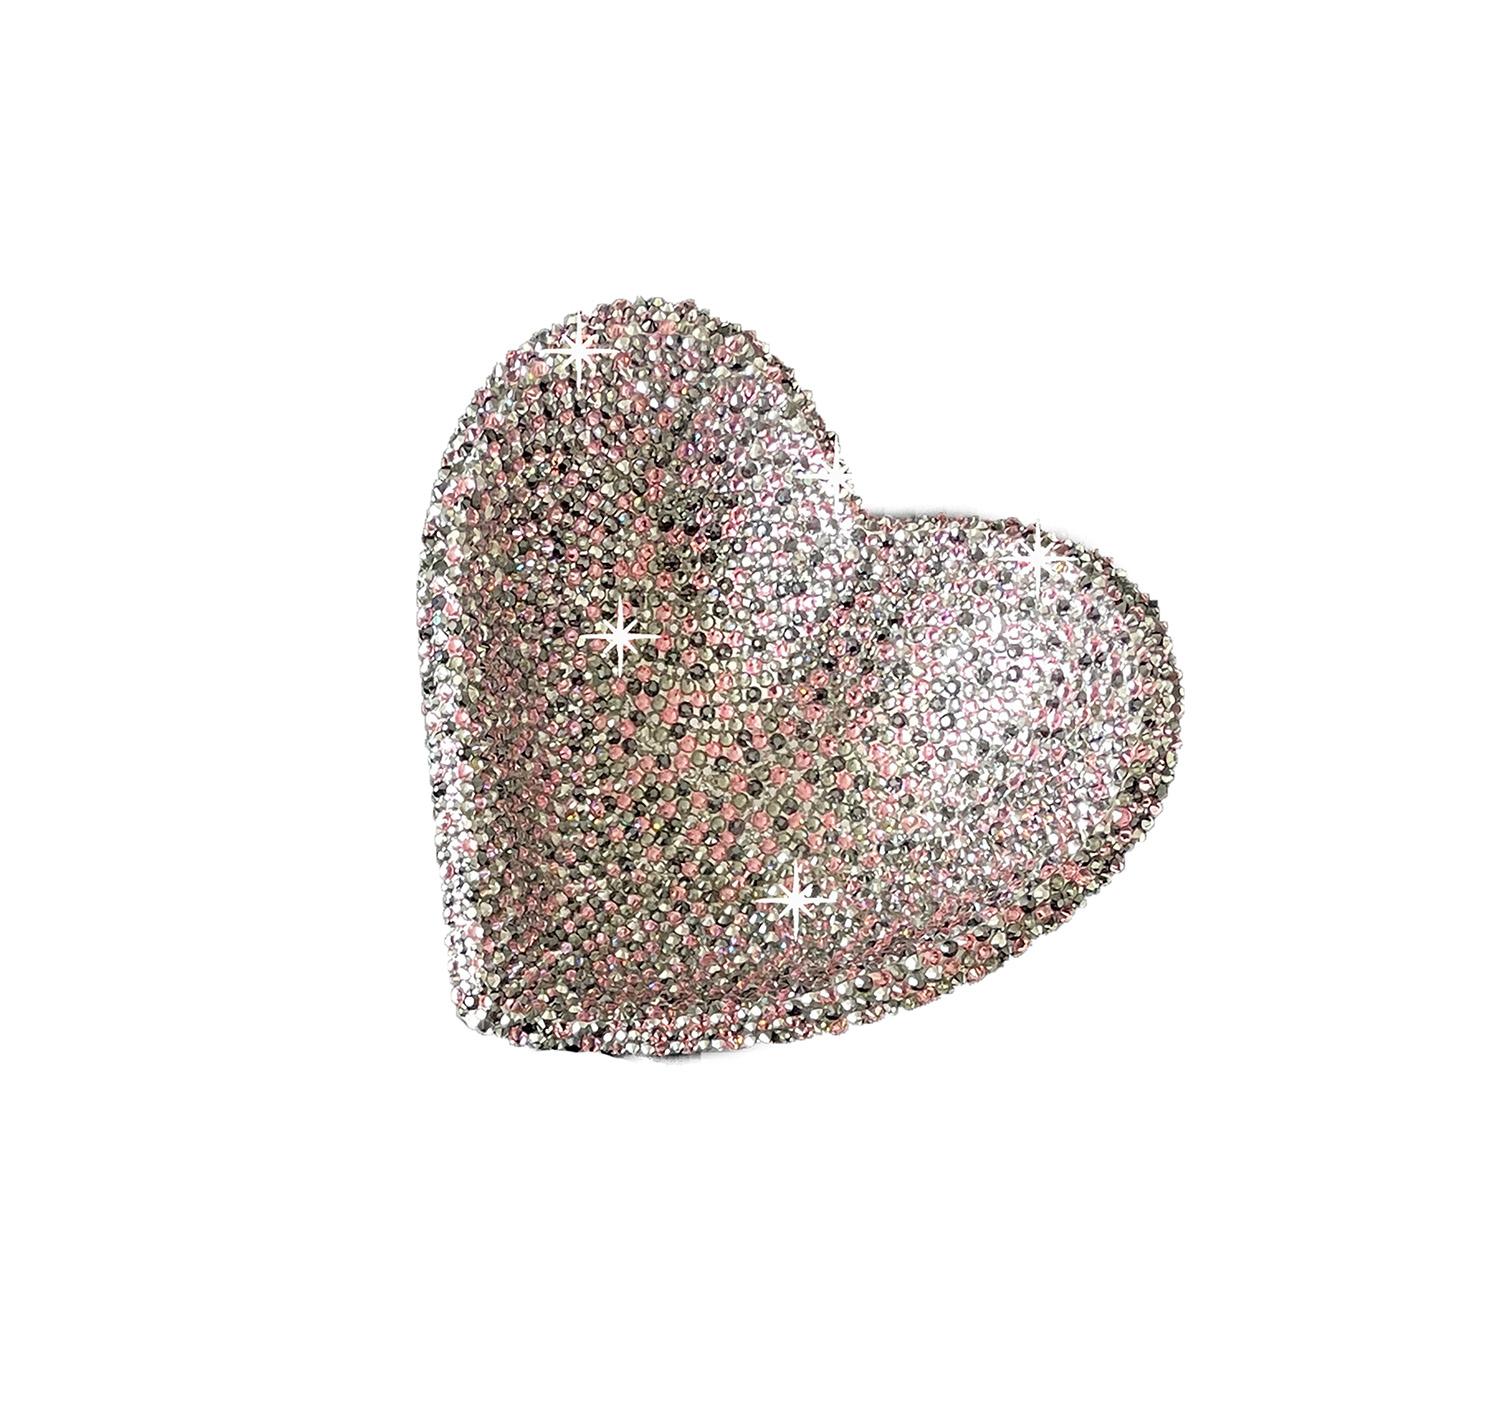 American “Shimmer Melange” Small Heart For Sale